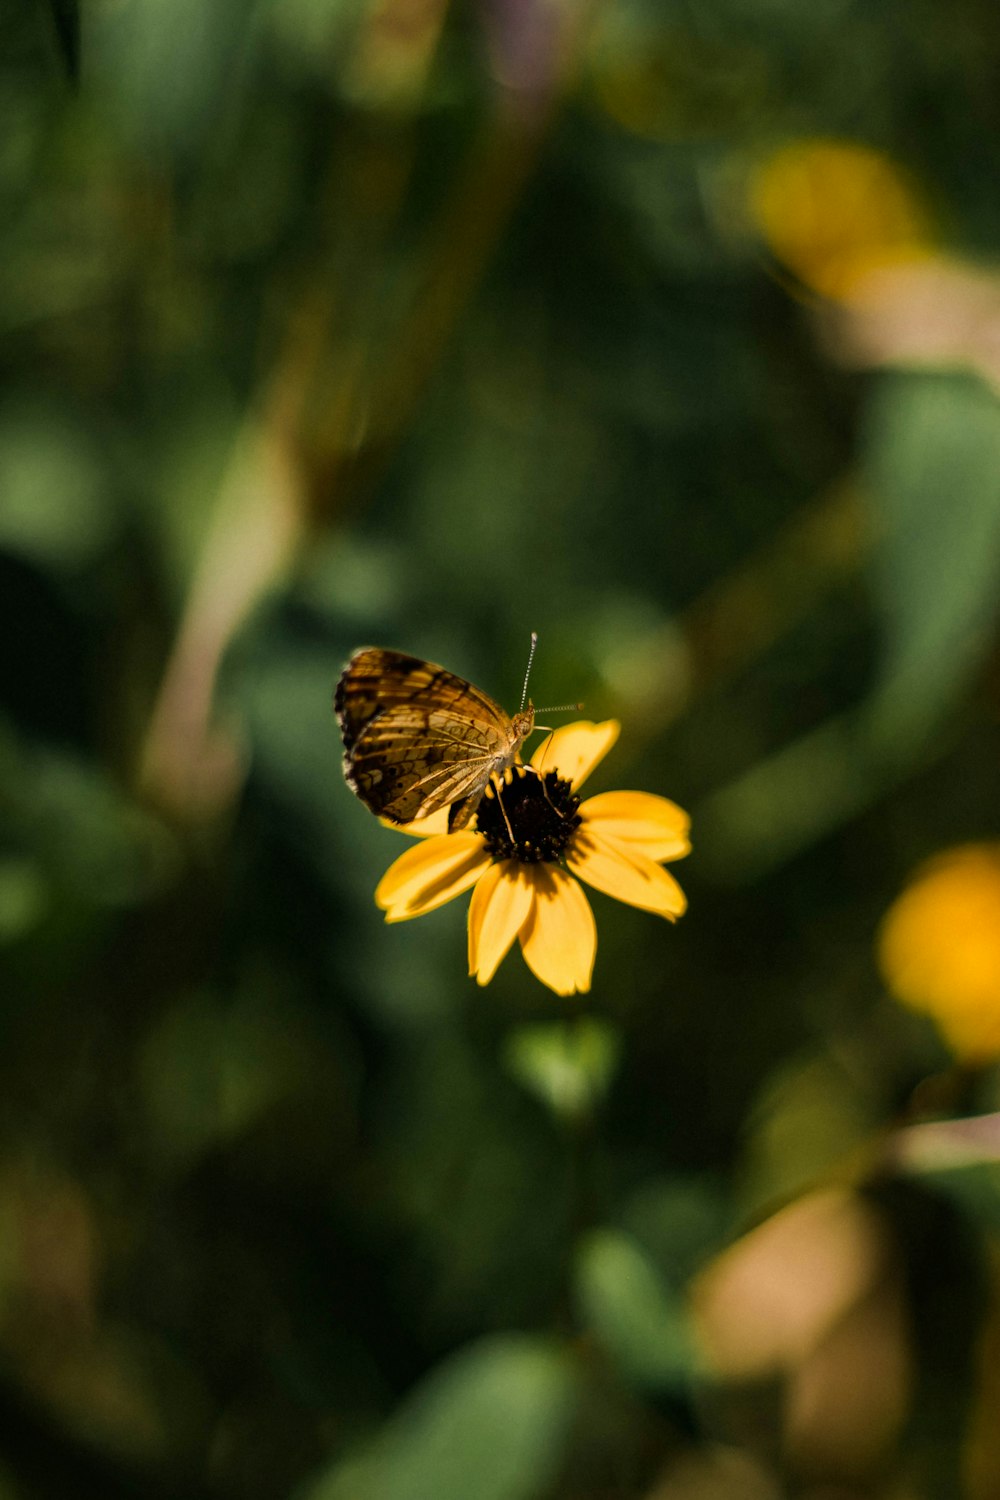 borboleta marrom empoleirada na flor amarela em fotografia de perto durante o dia